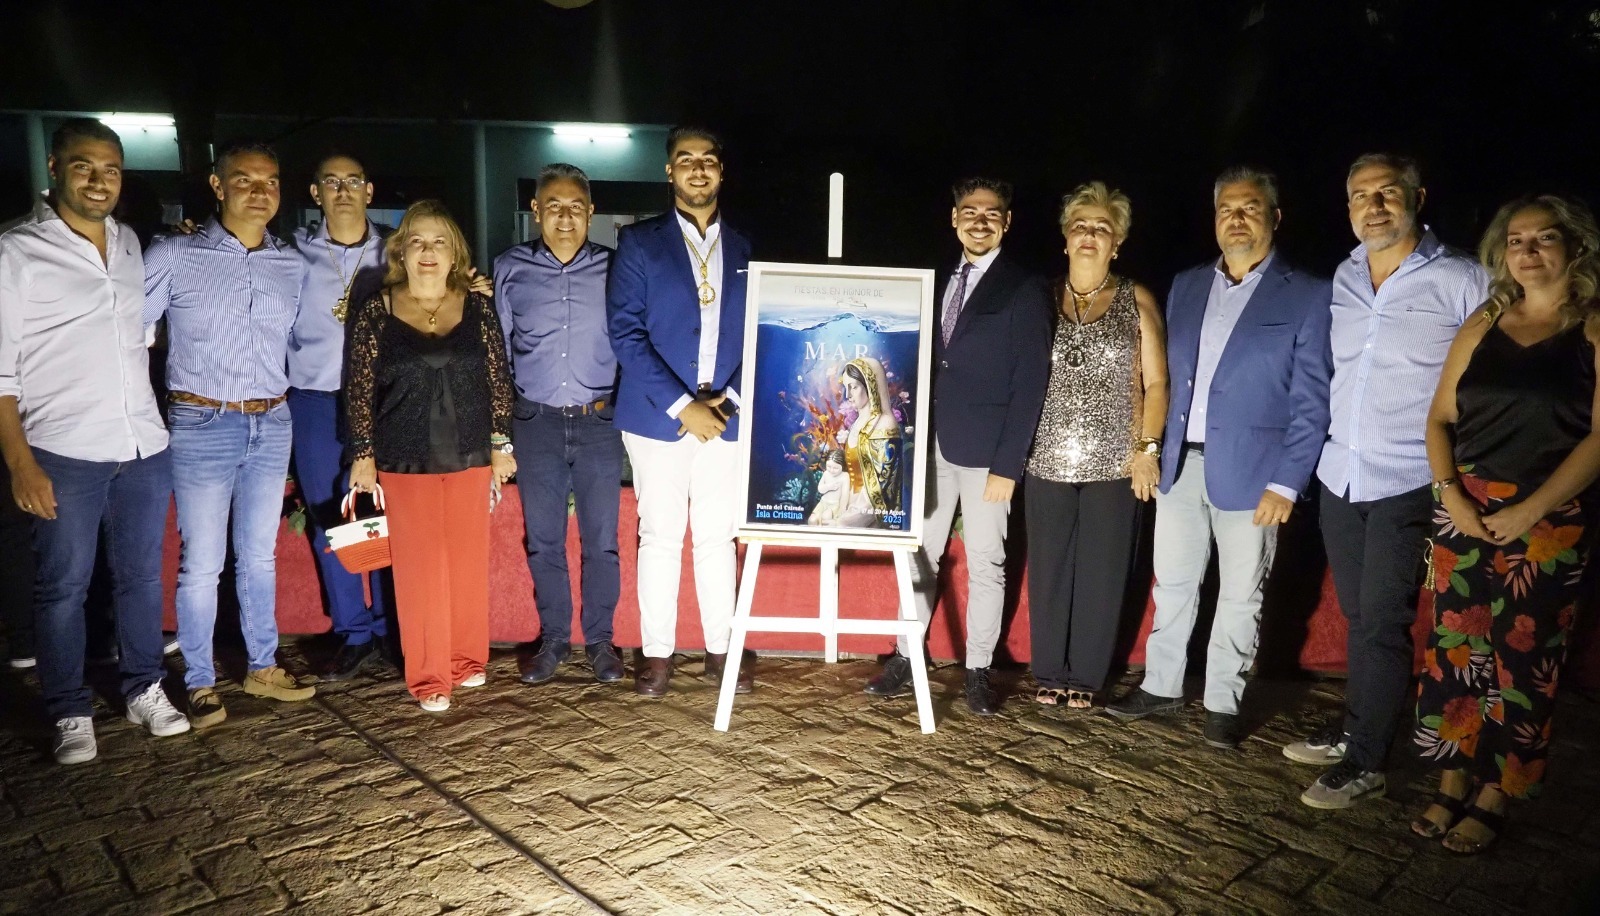 Presentado en Isla Cristina el cartel de las Fiestas de la Virgen del Mar